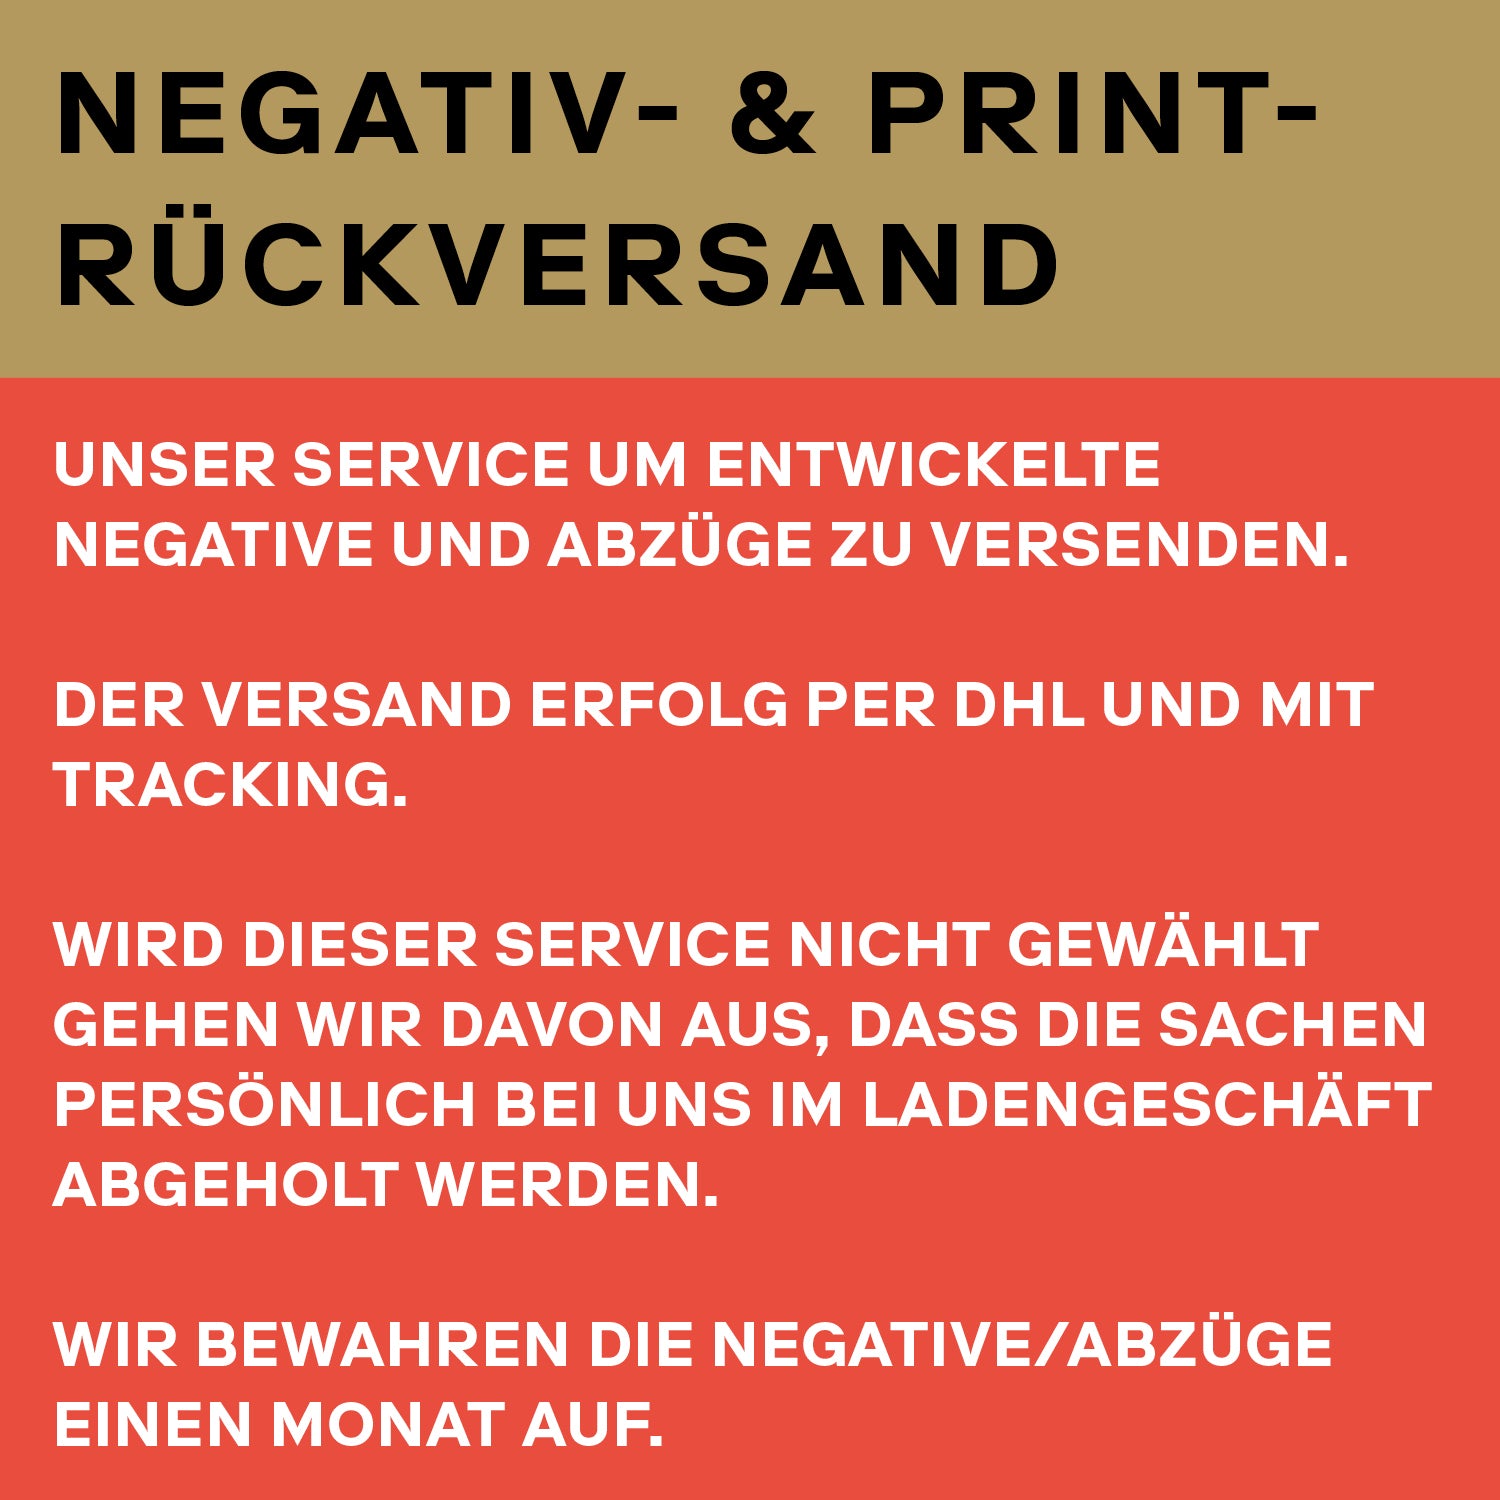 Negativ- & Print-Rückversand